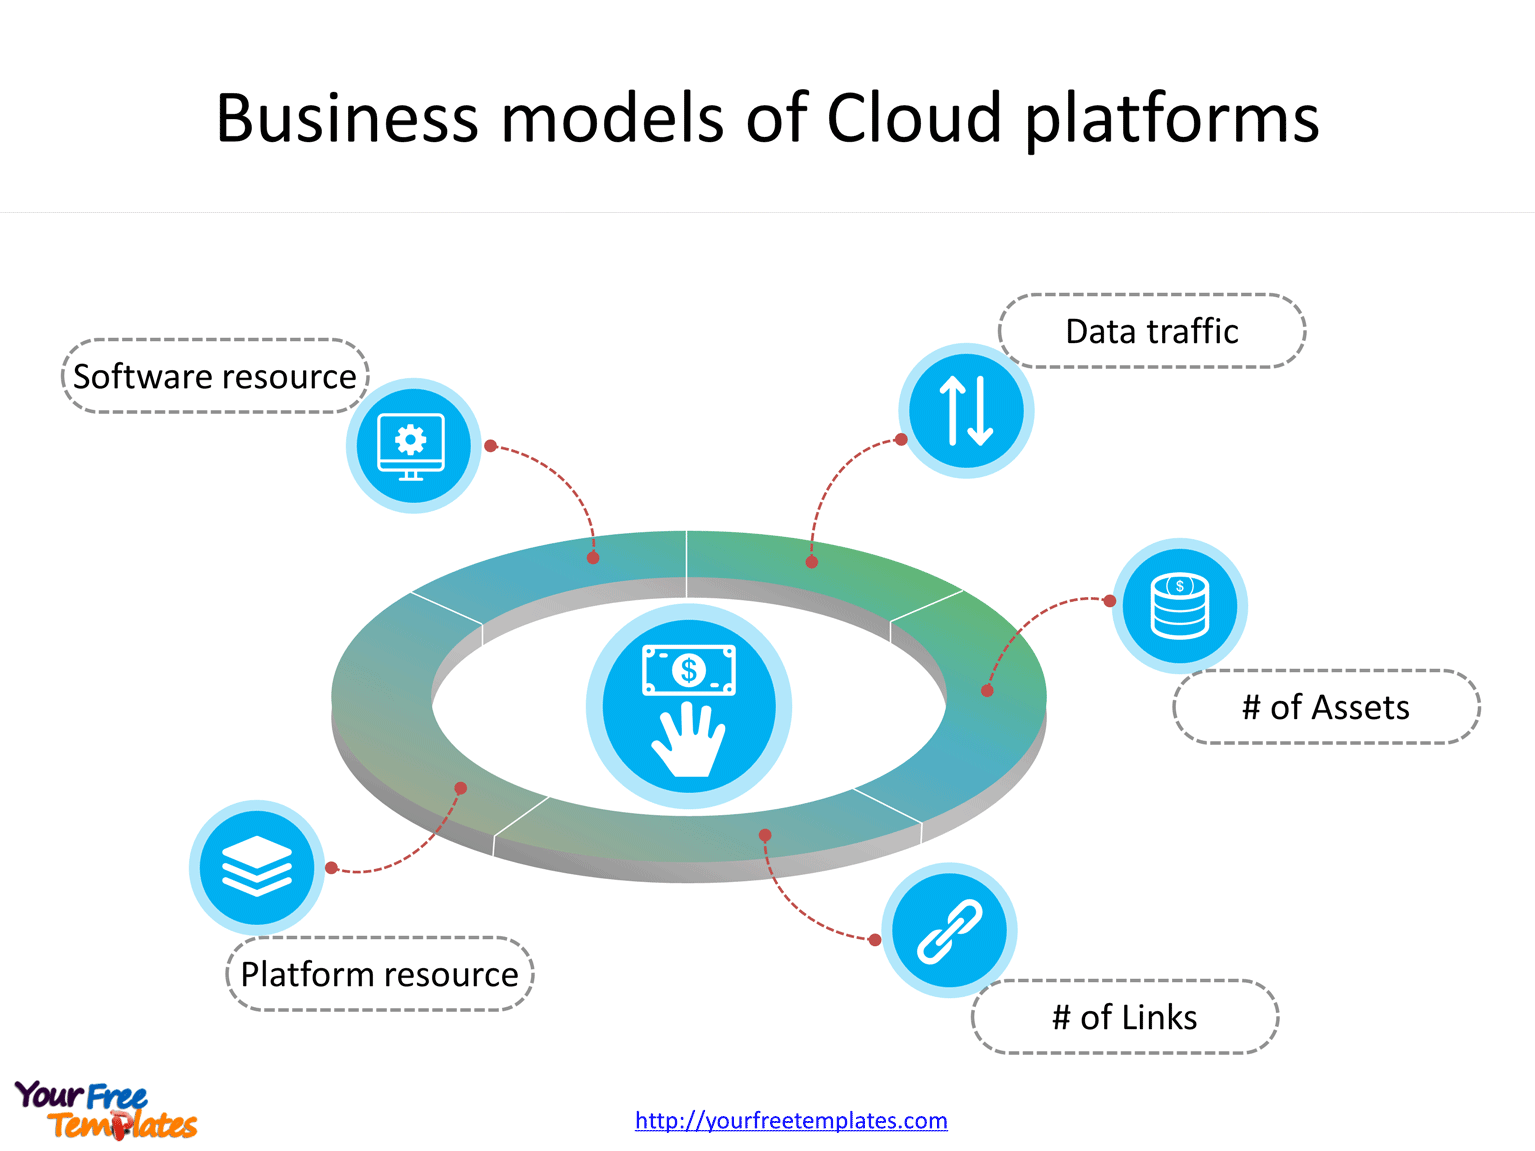 Business models of industrial internet platforms